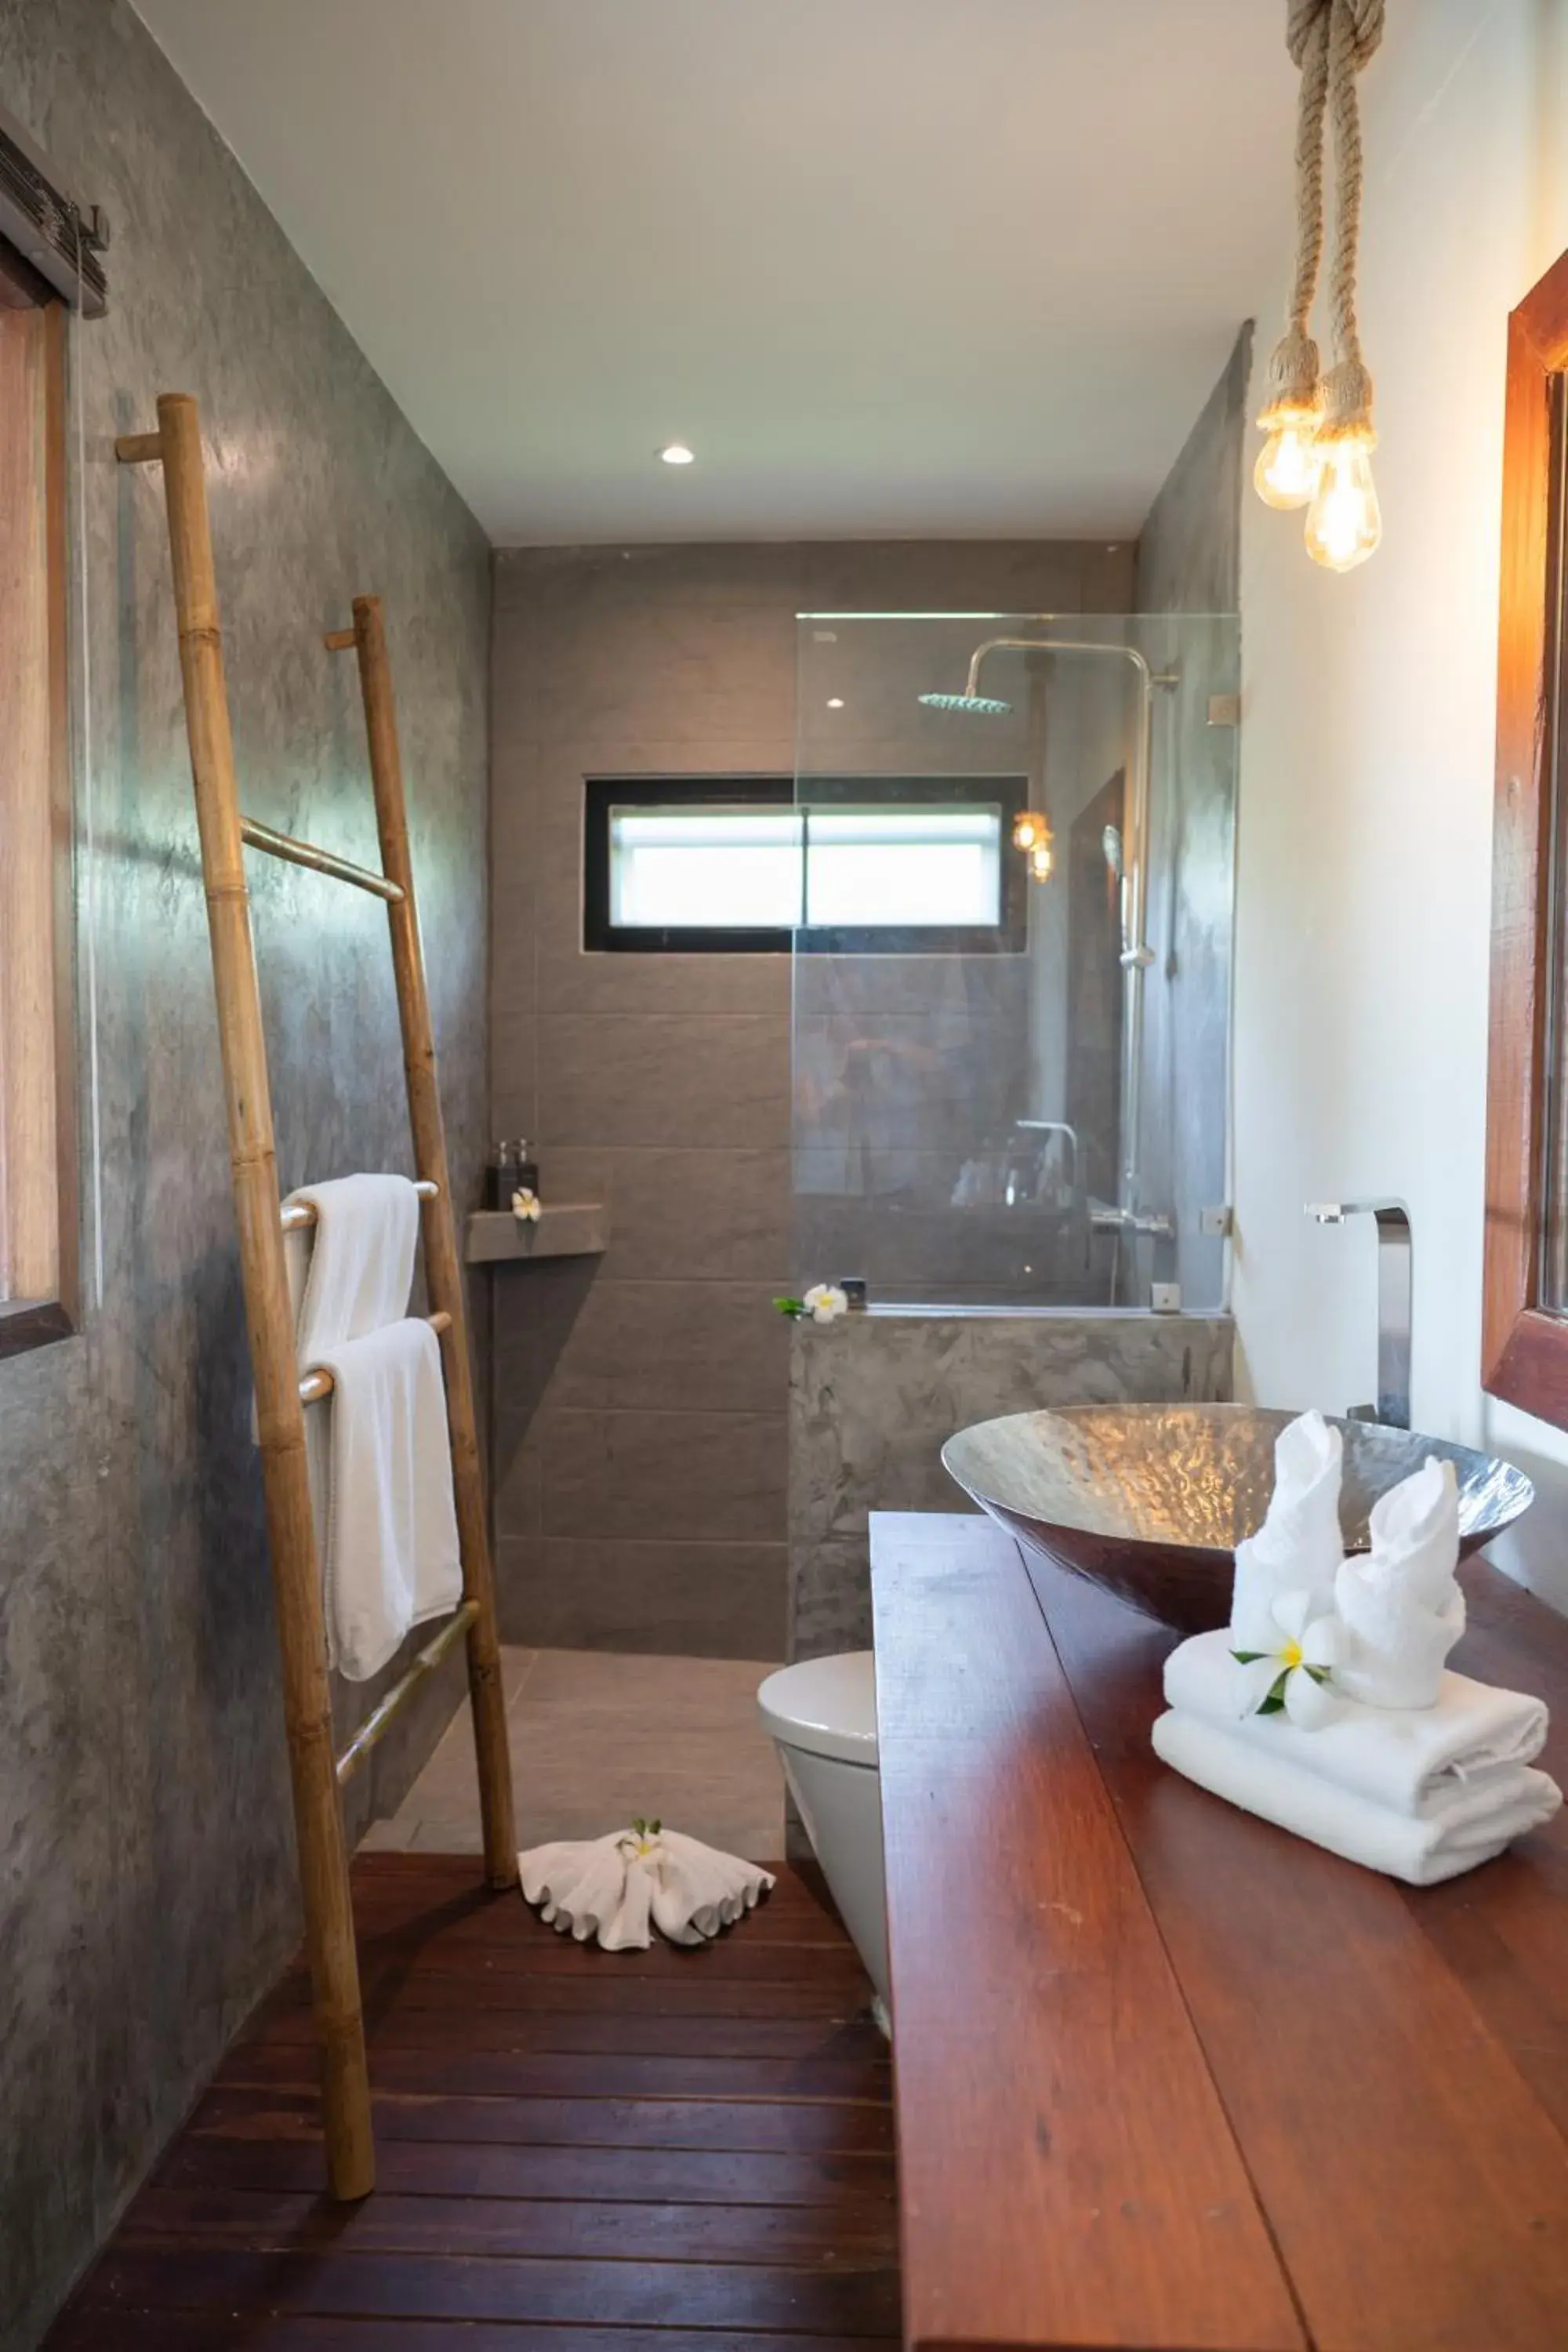 Shower, Bathroom in Sea Dance Resort